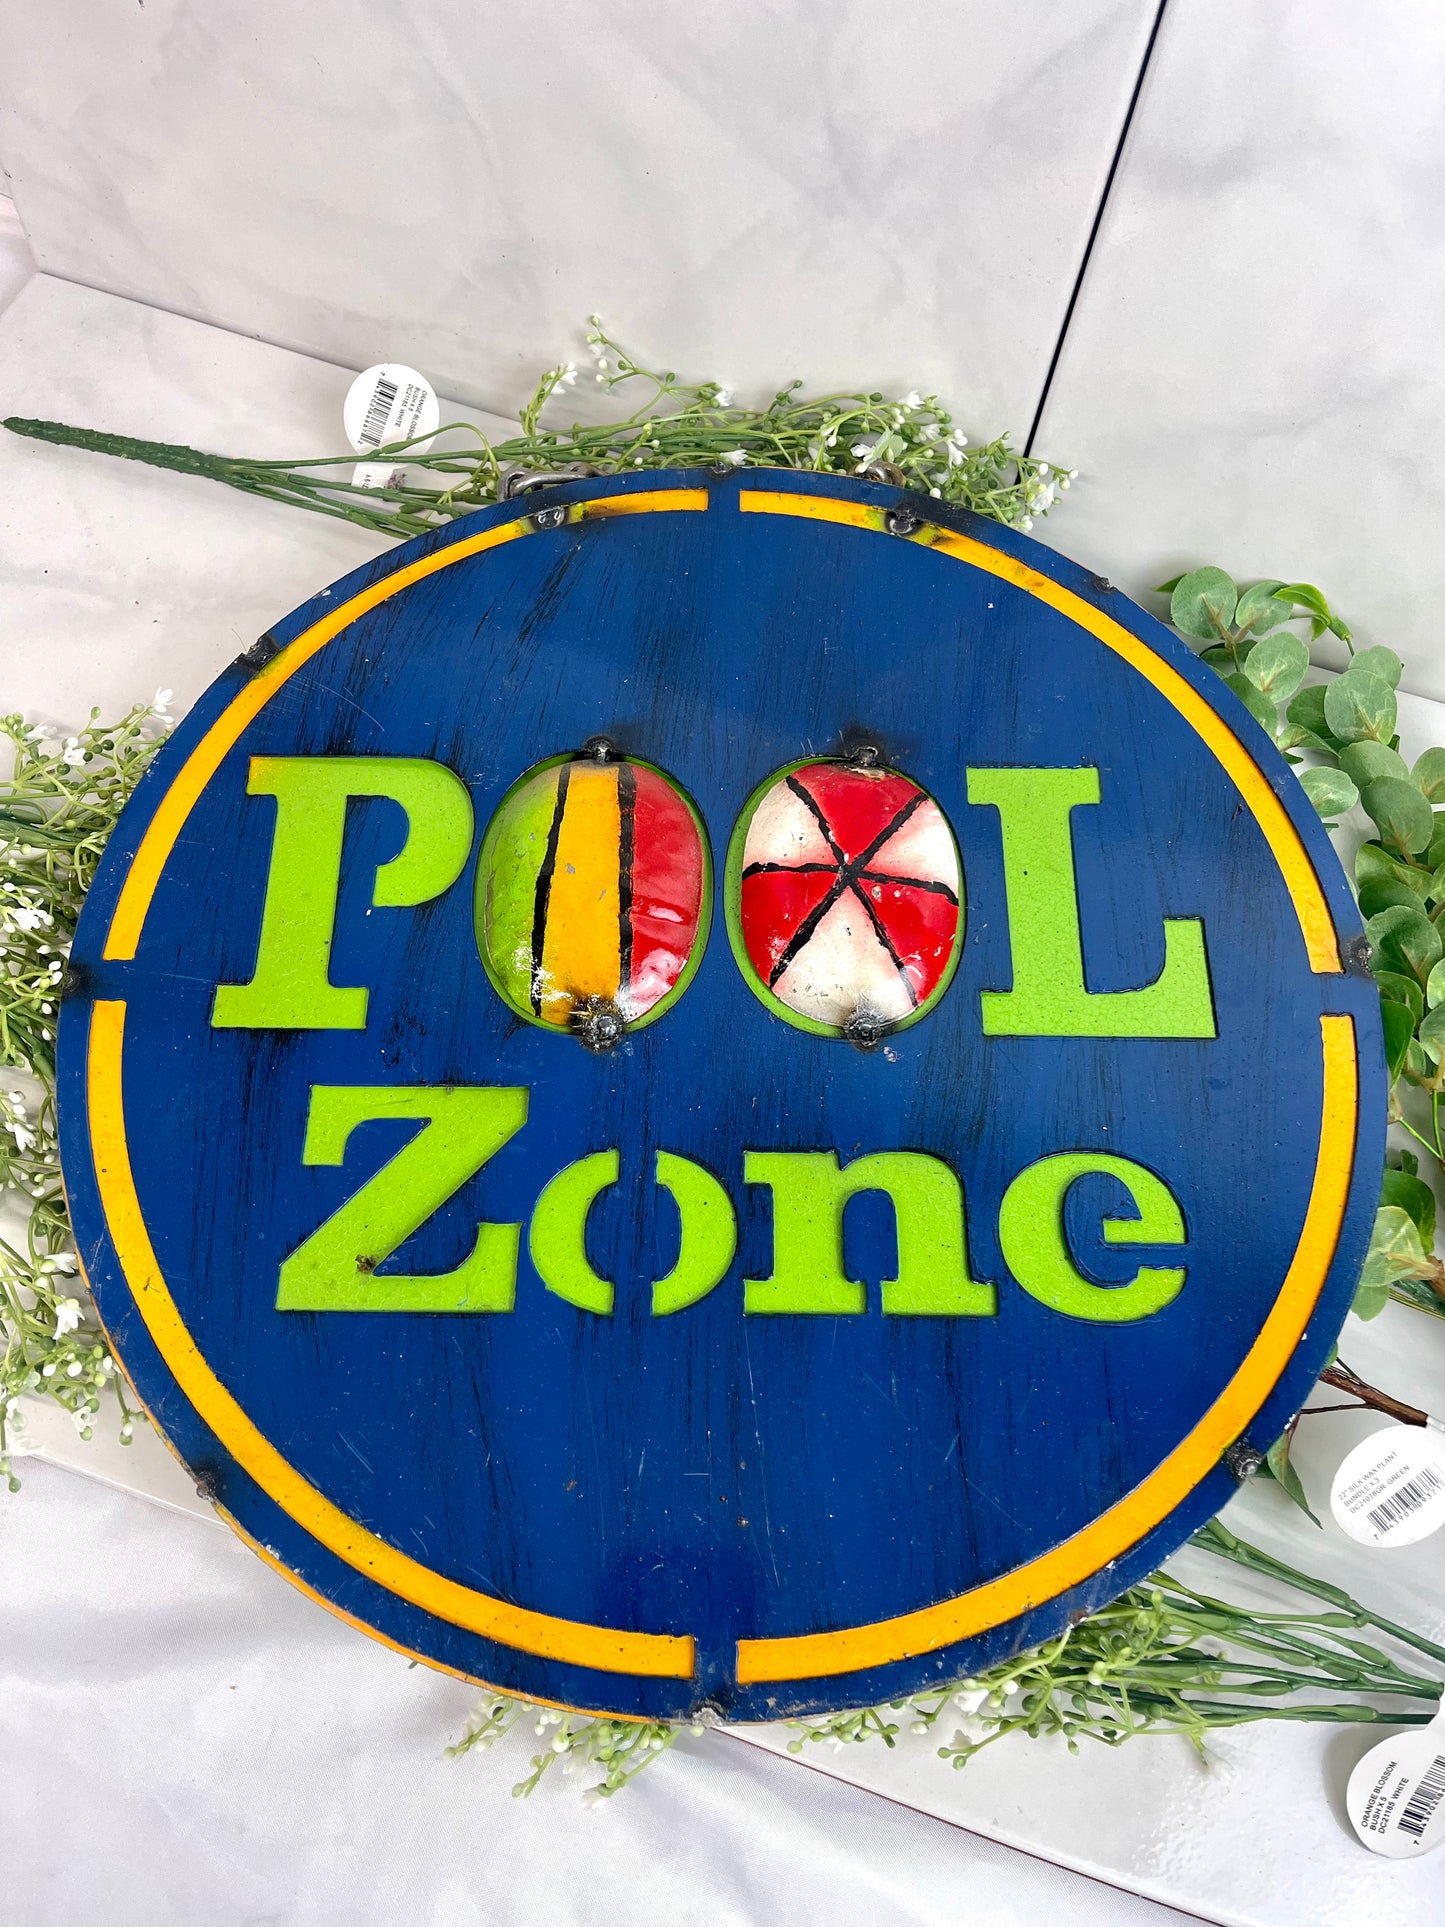 Pool Zone Metal Hanging Sign